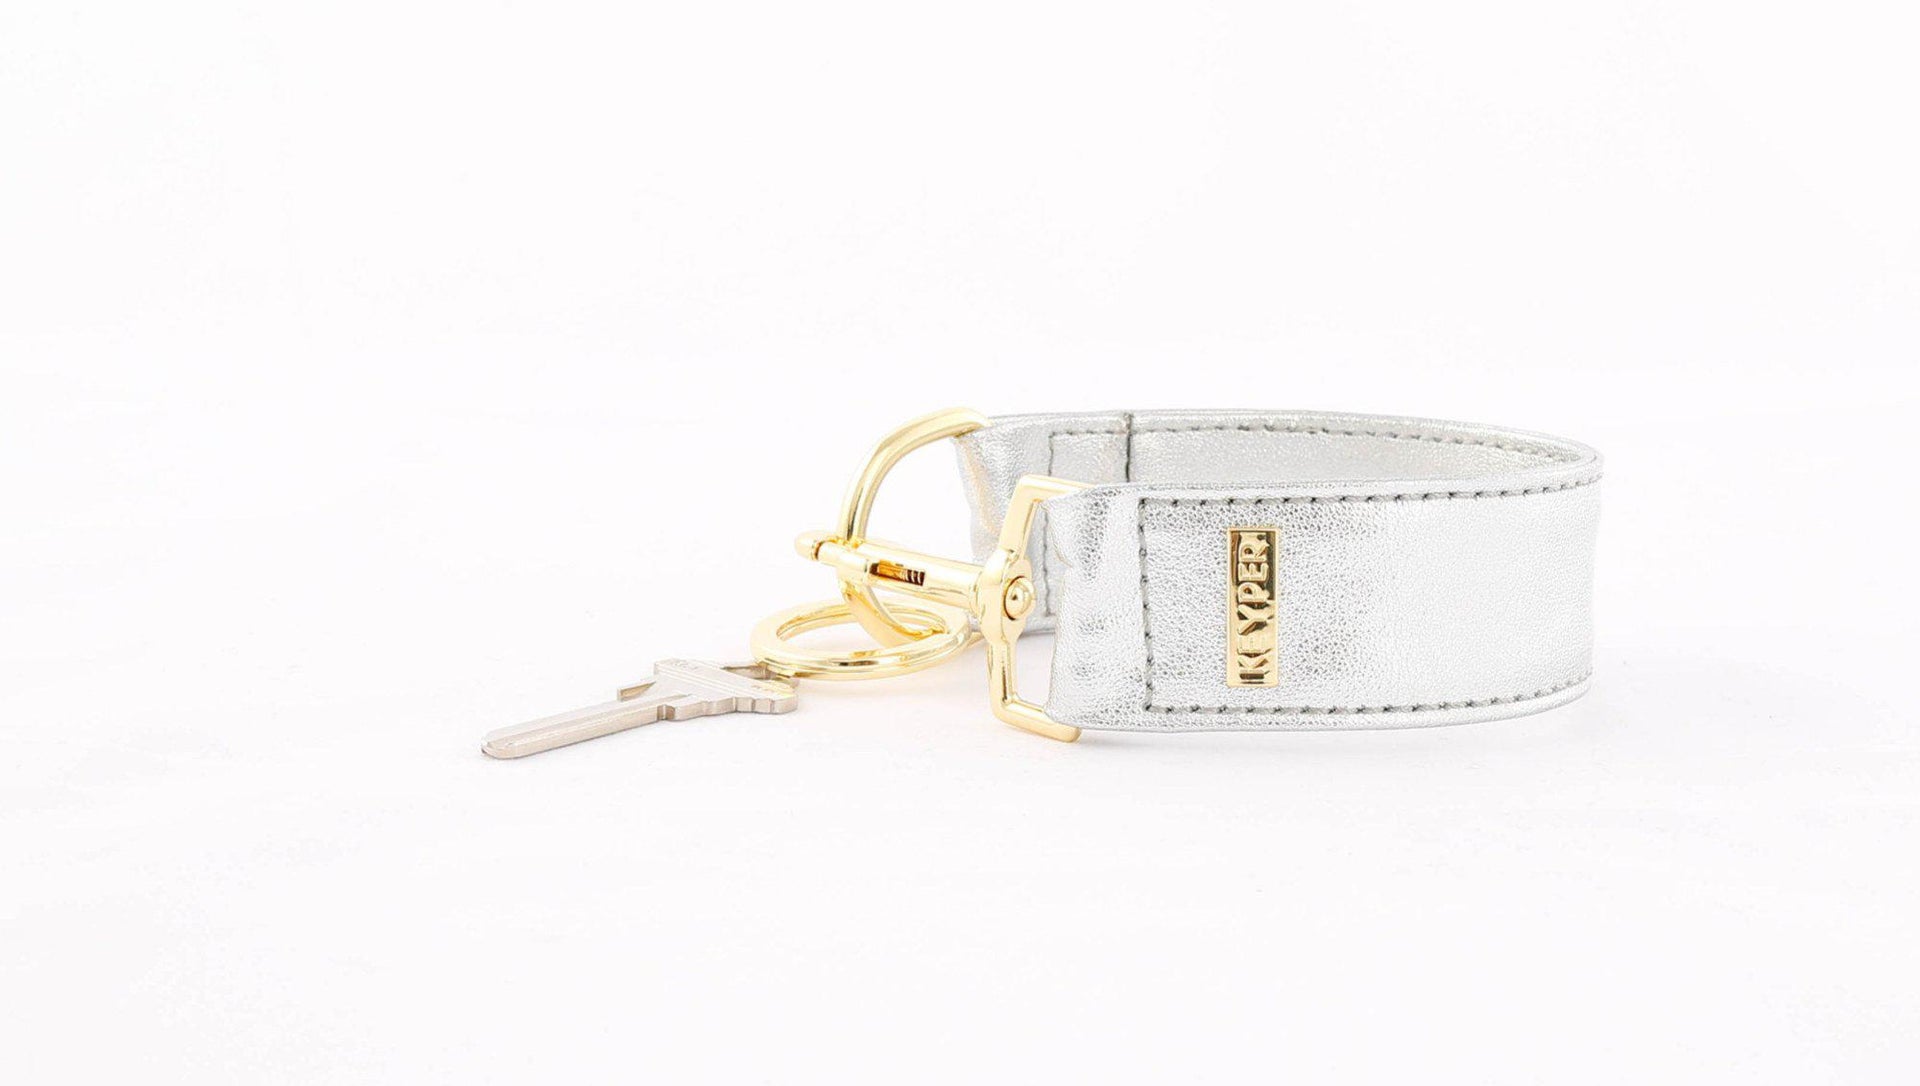 clutch purse, travel purse, key ring bracelet, premium leather, clear bag pouch, Wristlet Set